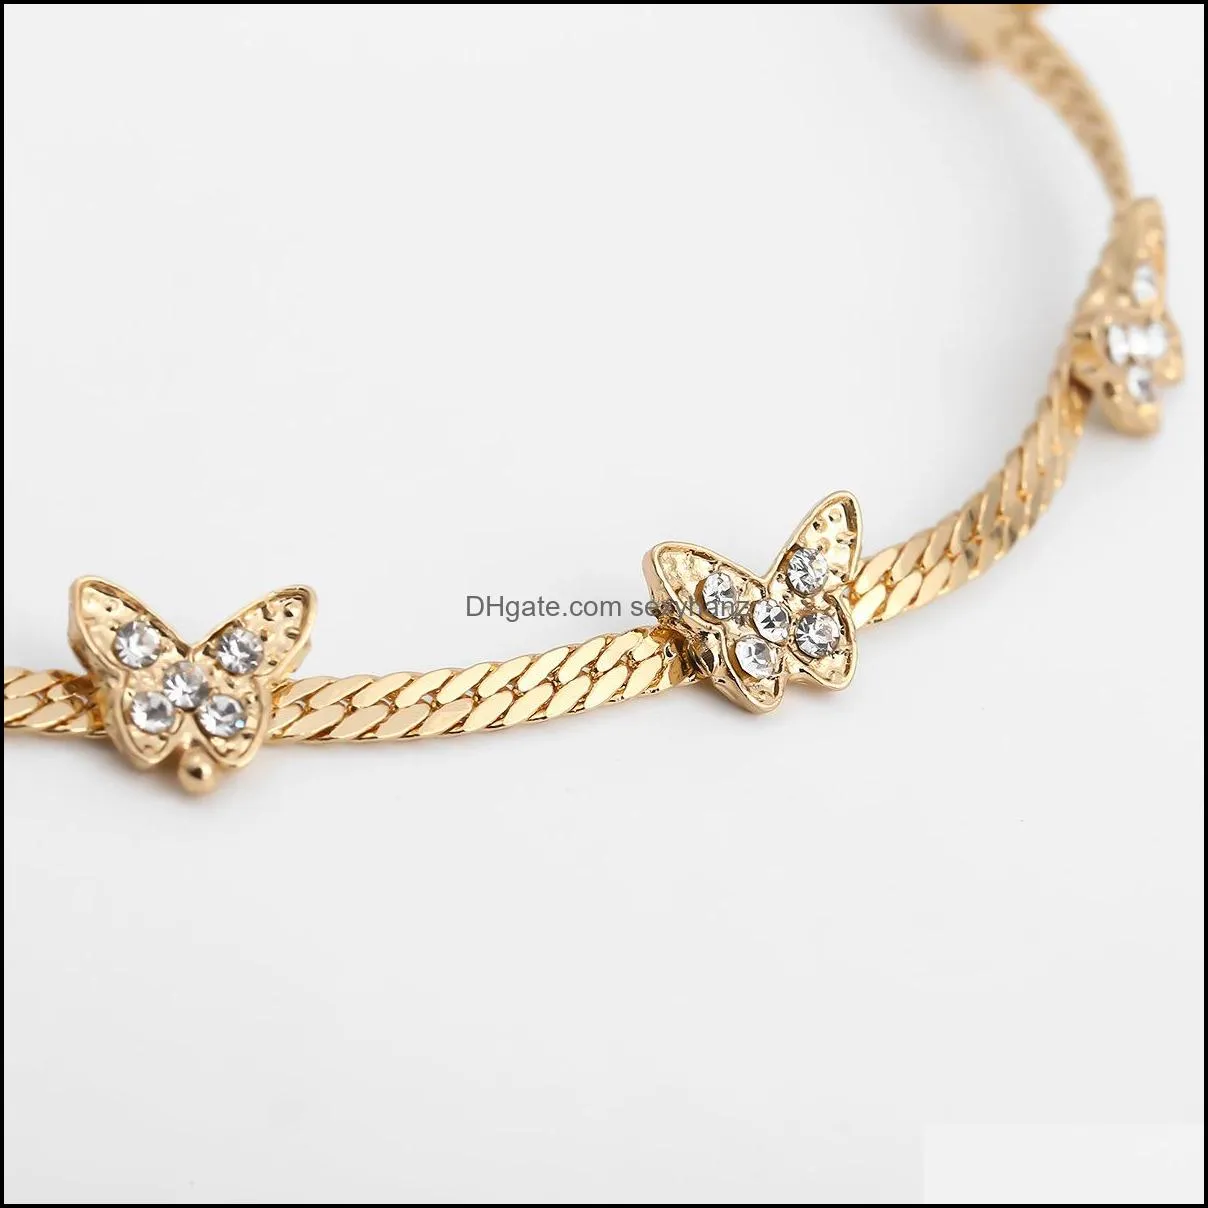 Bracelet Golden Geometric Design Multielement Chain Bracelet Women niche suit bracelet Fashion Accessoriessuit